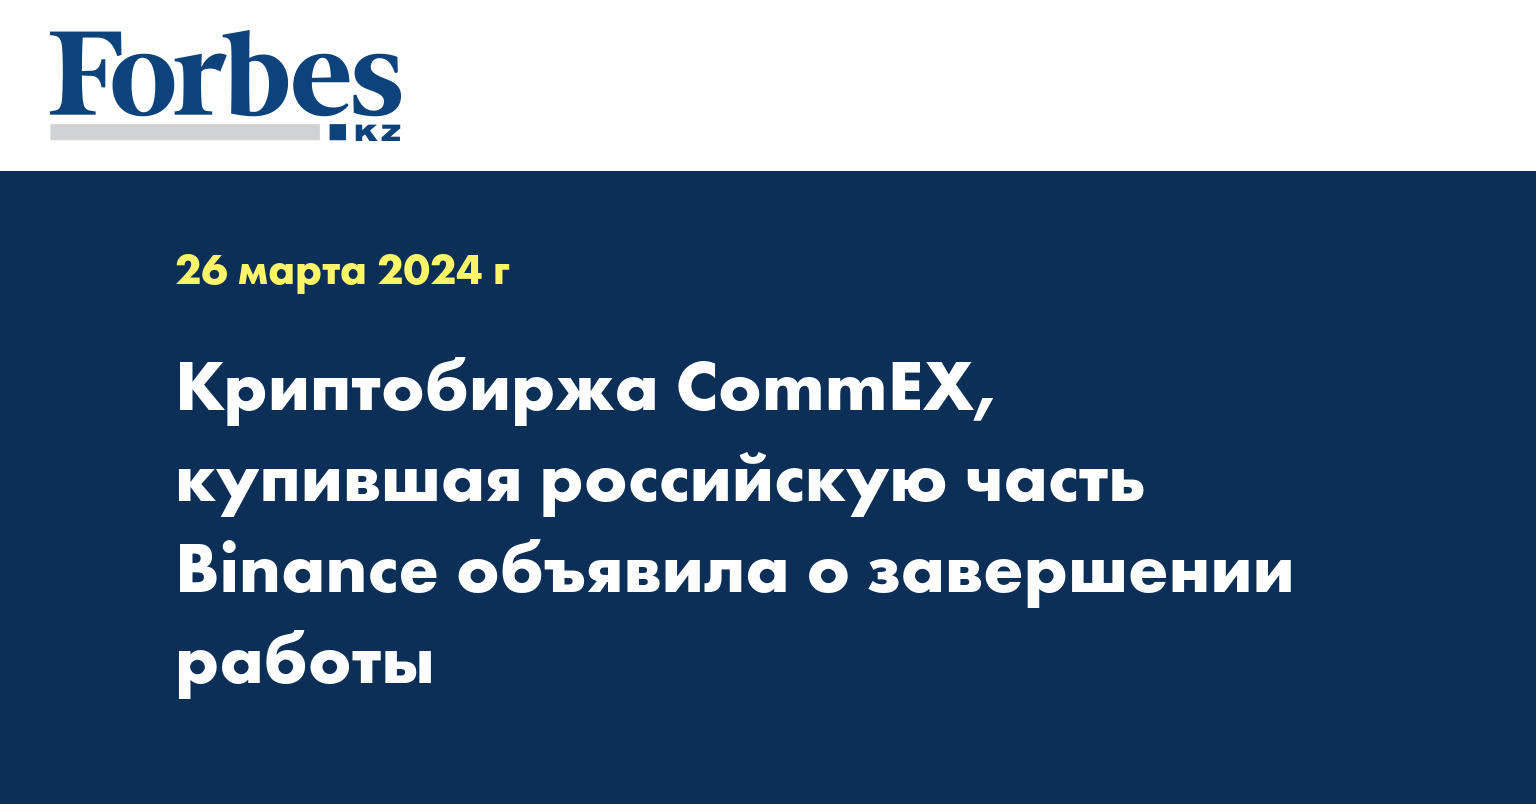 Криптобиржа CommEX, купившая российскую часть Binance, объявила о завершении работы